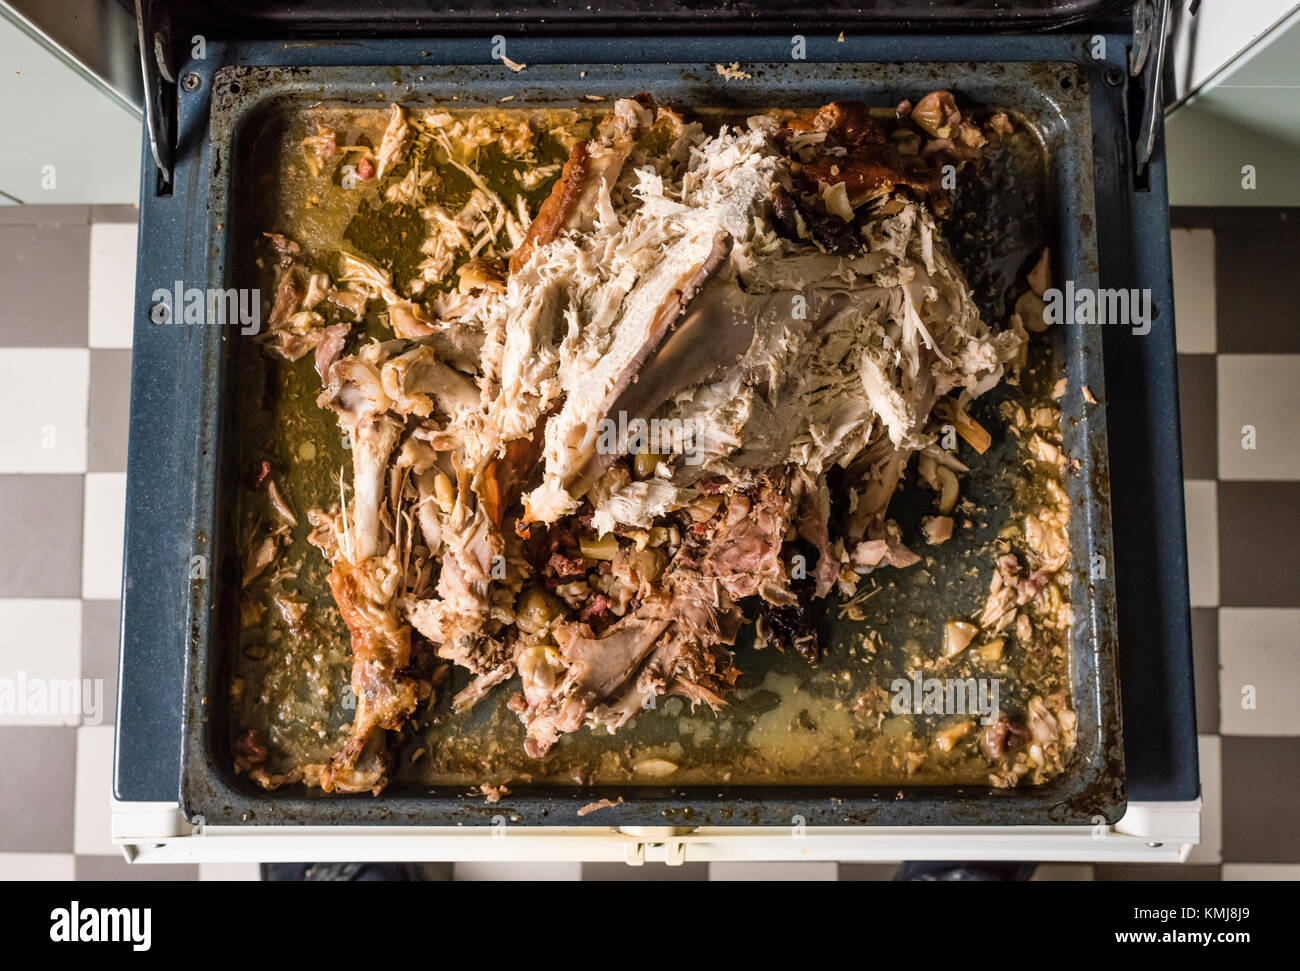 Übrig gebliebene Schlachtkörper und die Knochen von einem Thanksgiving Truthahn auf einem Ofen Fach. Stockfoto